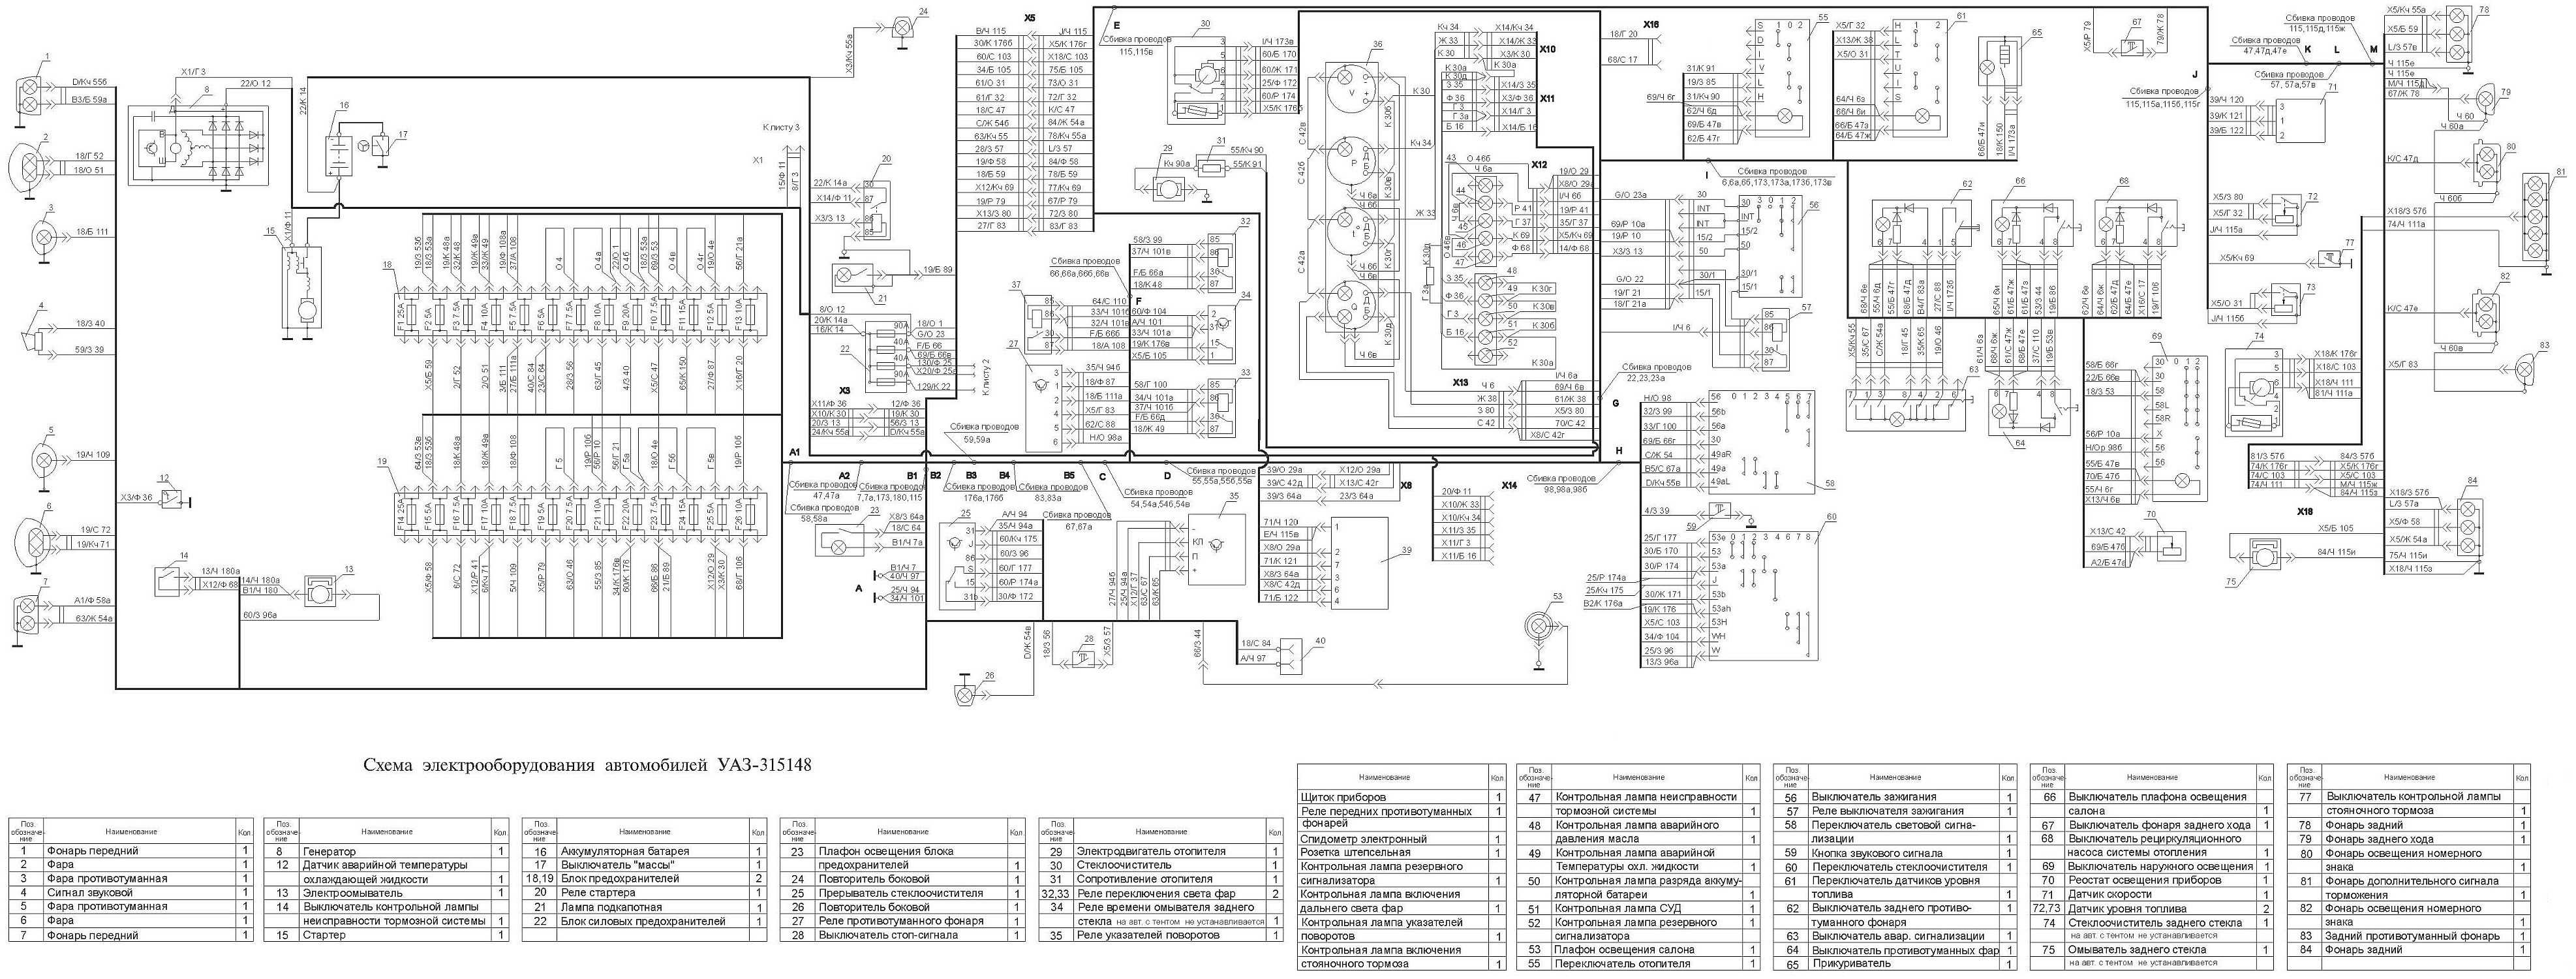 Уаз хантер - схема электрическая. схема соединения системы управления двигателем мод. змз-409 евро-0 на уаз